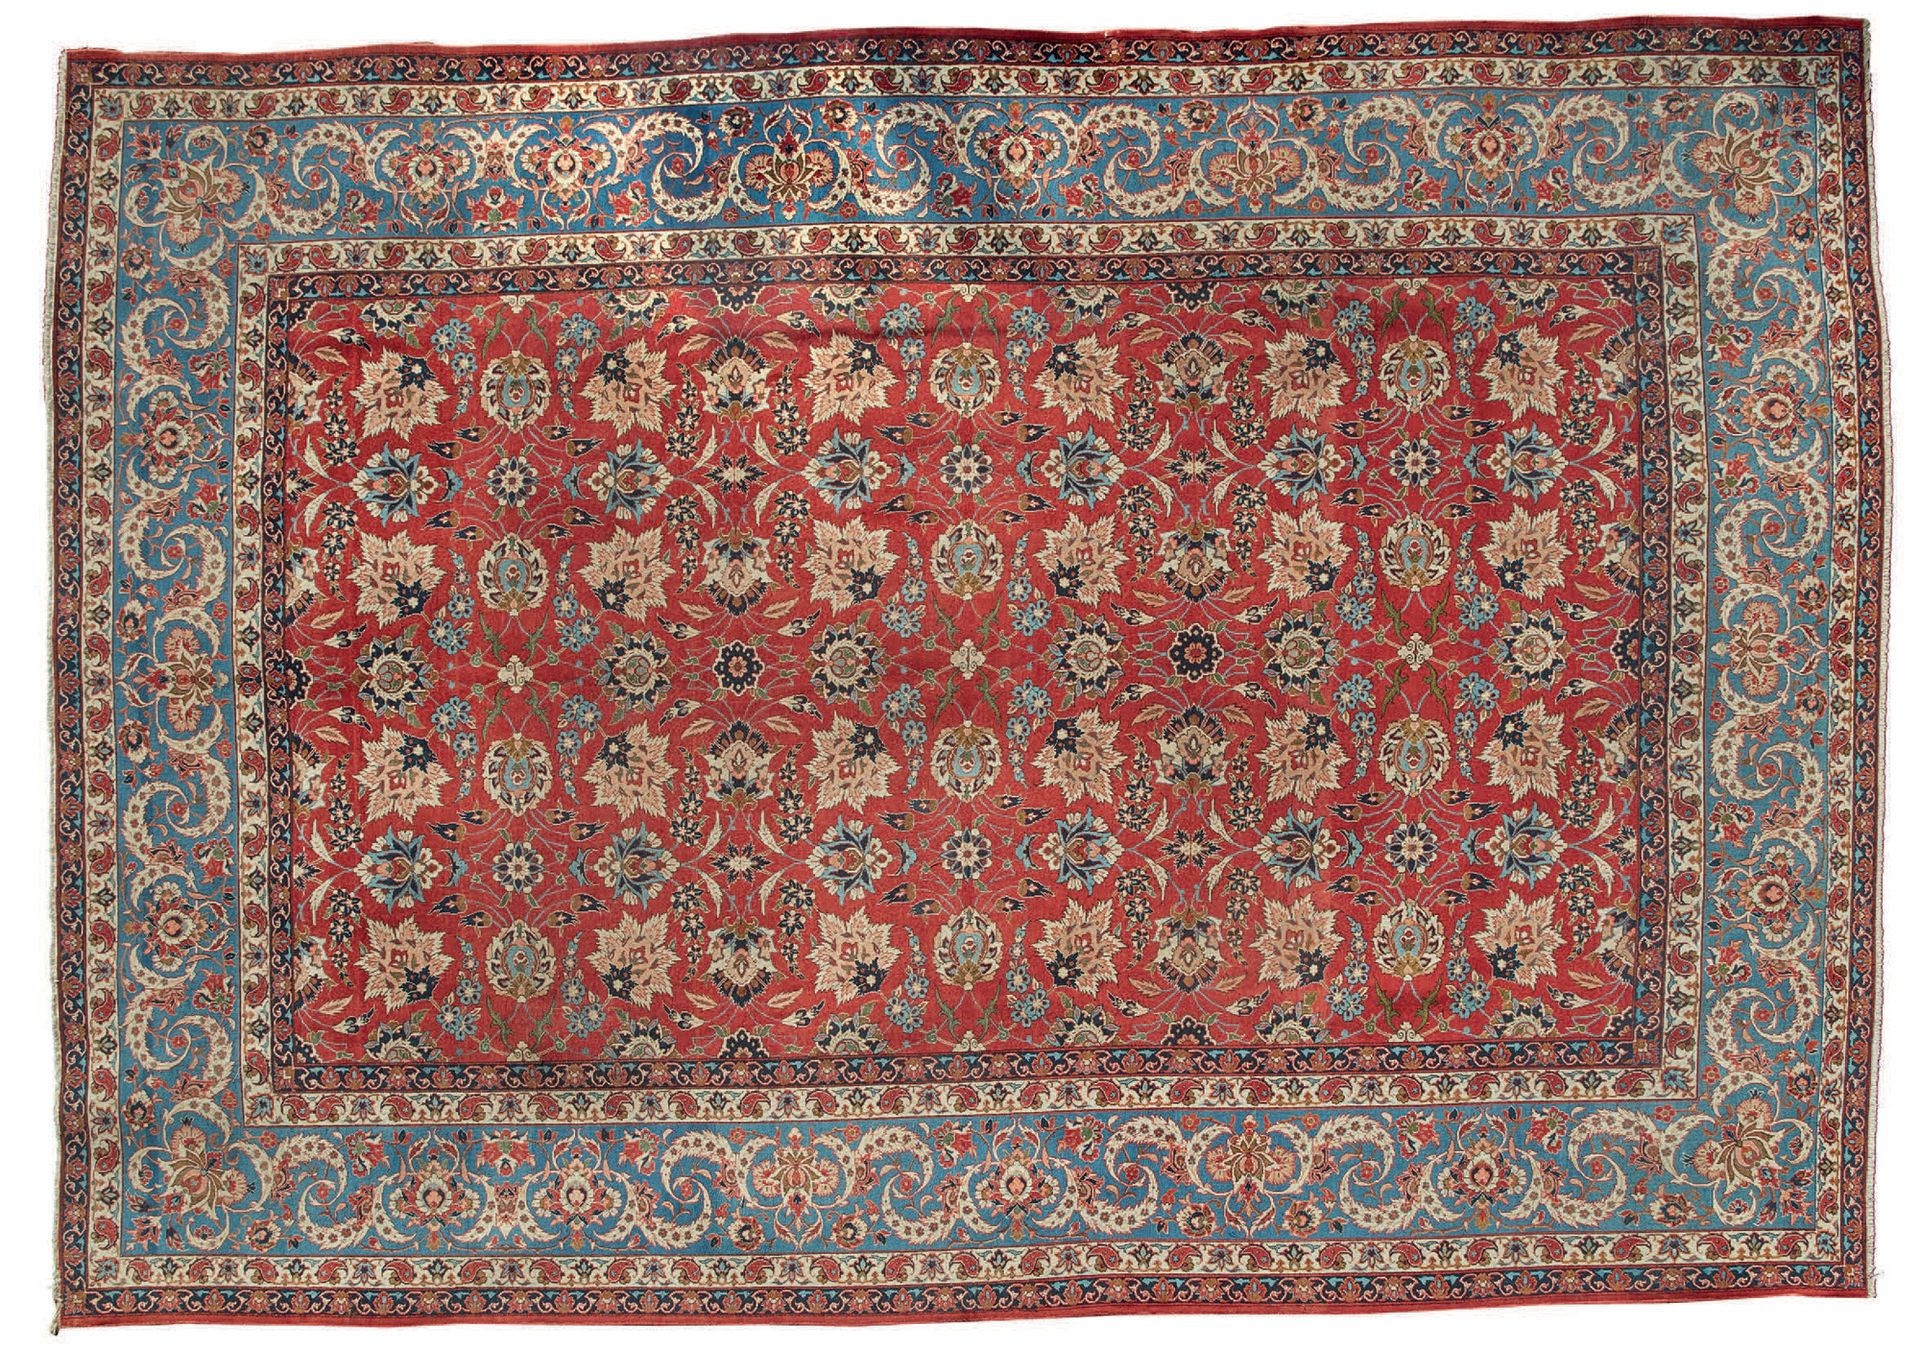 Null Importante e fino Isfahan (Iran), metà del XX secolo.
Velluto di lana d'agn&hellip;